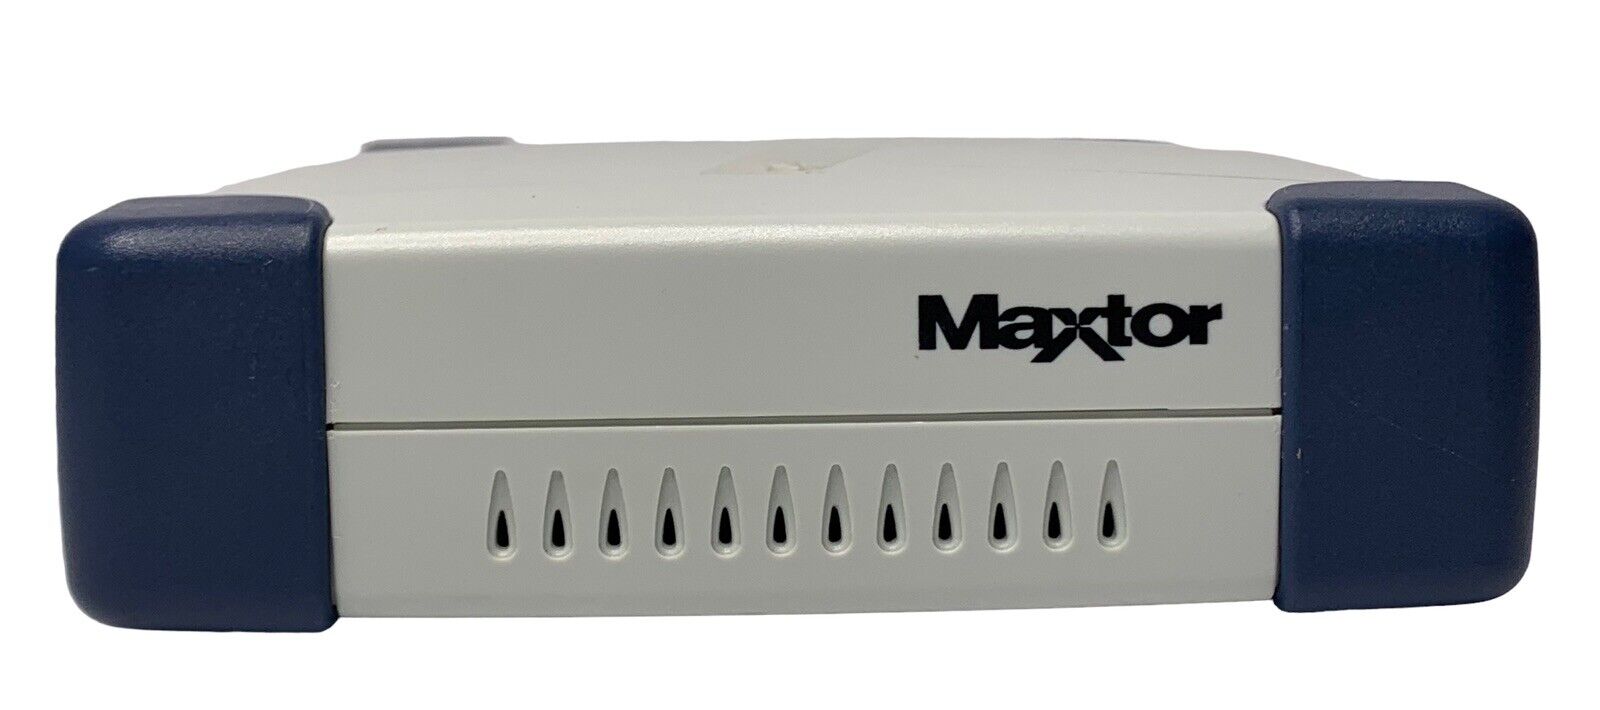 Maxtor 40GB External Hard Drive 3000 LS Personal Storage G01J040 UNTESTED